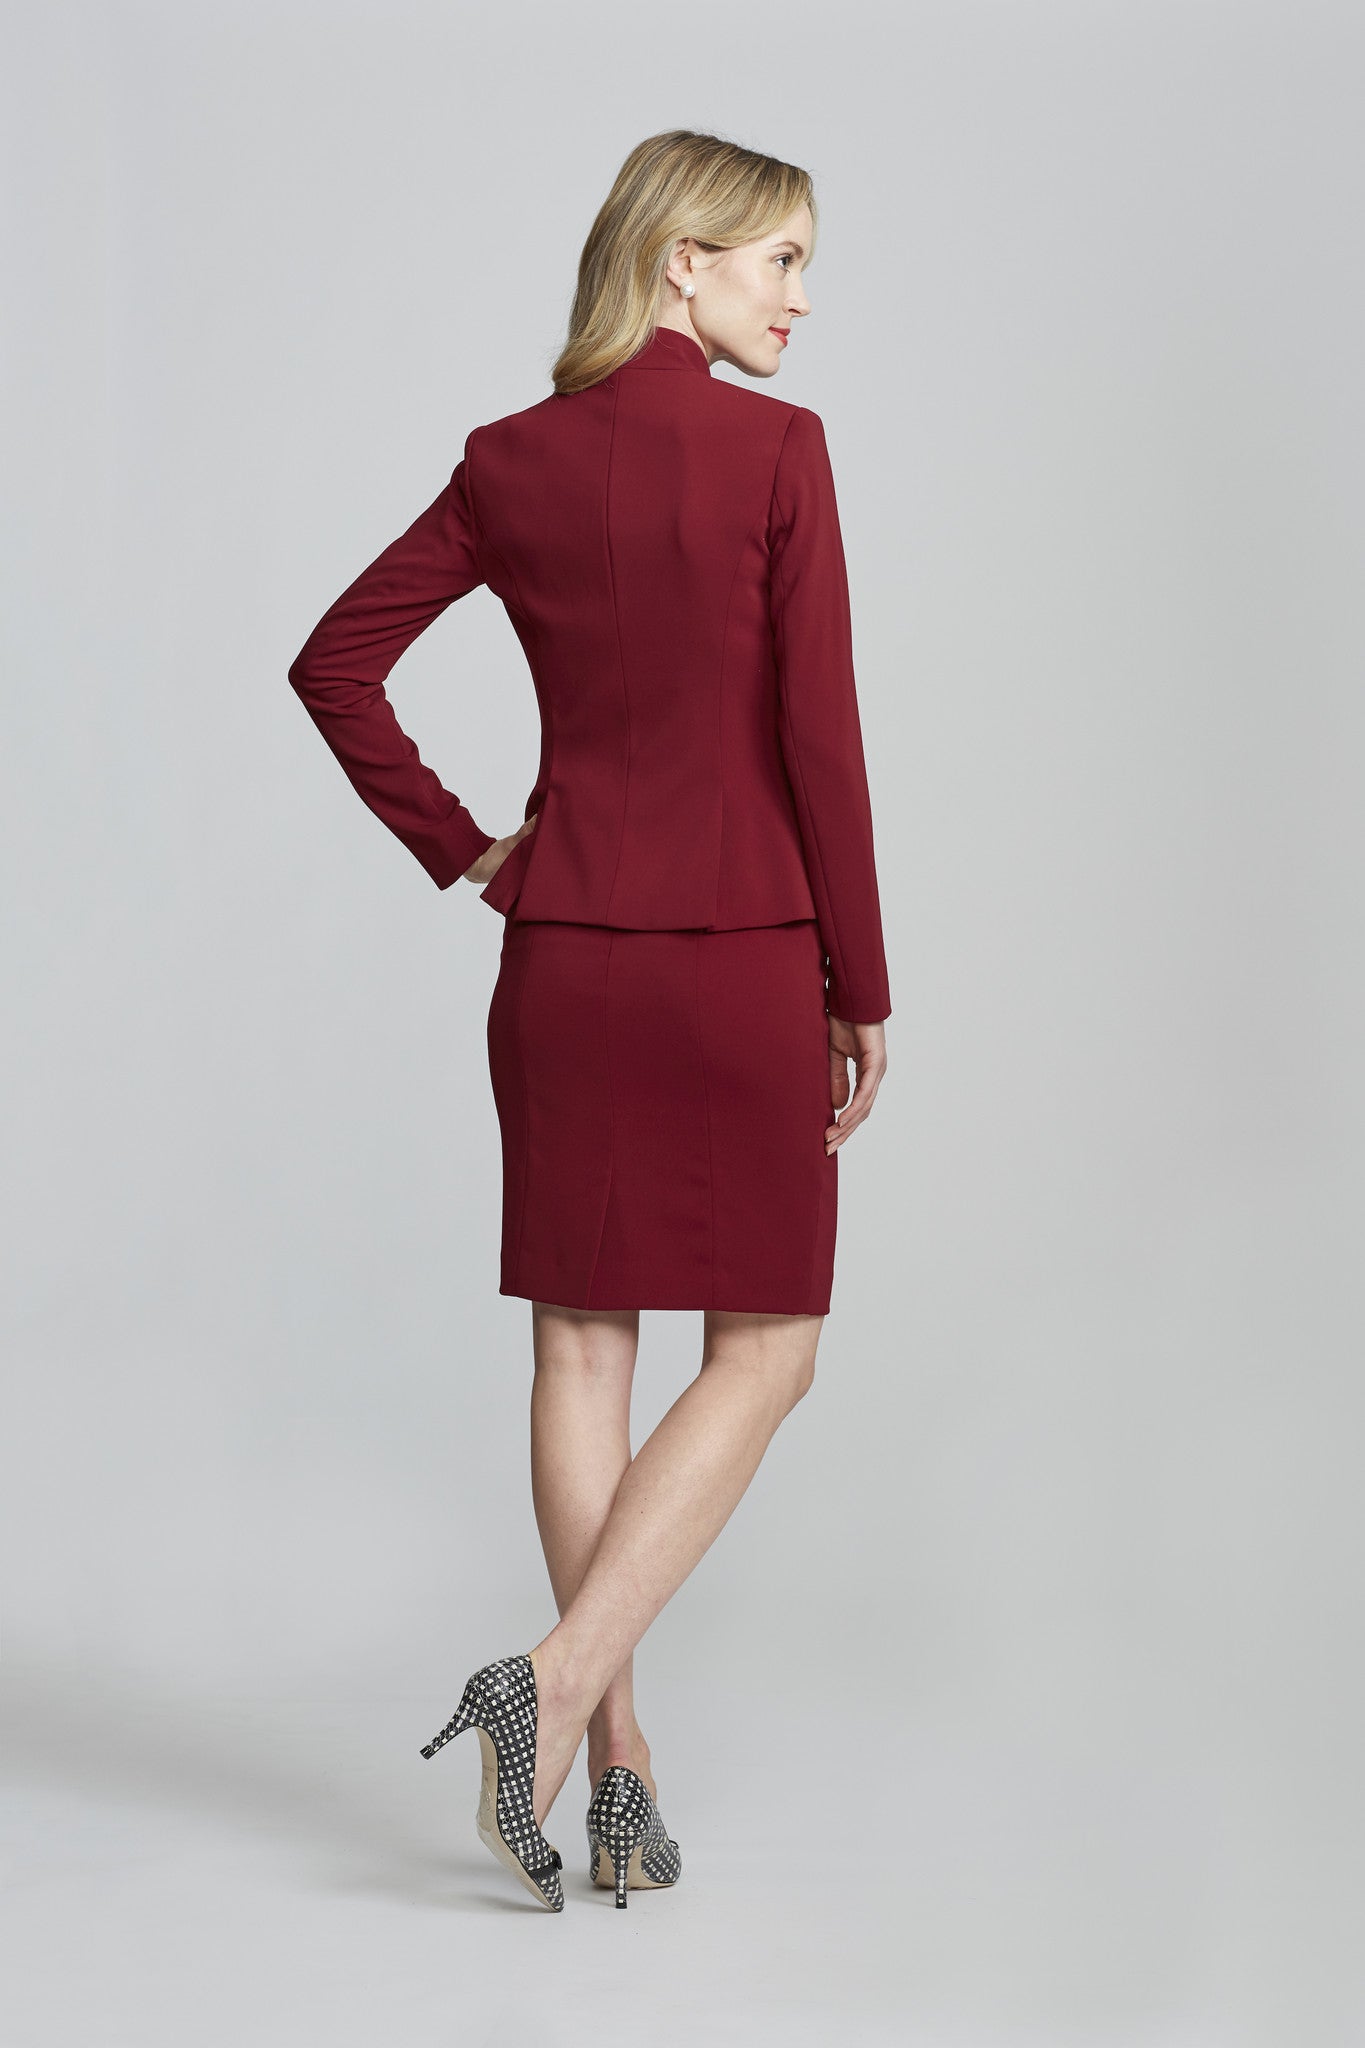 Women' Business Chelsea Skirt - Merlot NORA GARDNER | OFFICIAL STORE for work and office